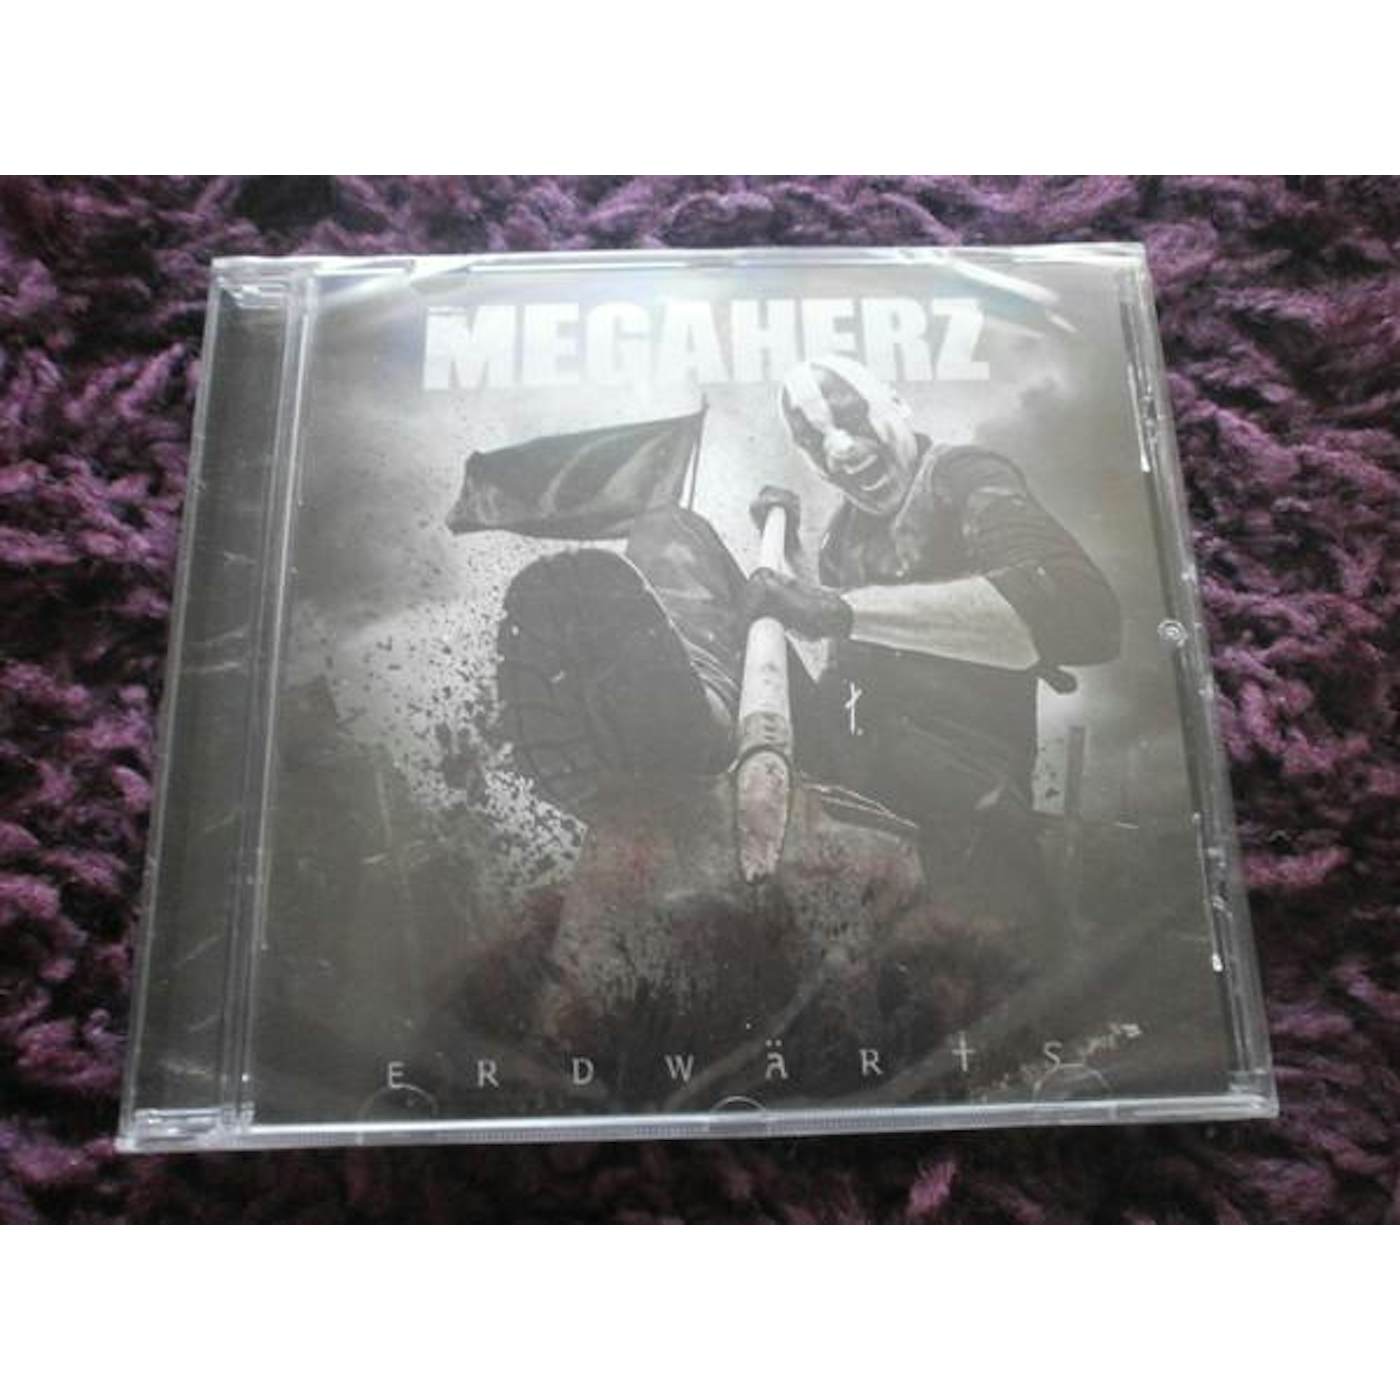 Megaherz ERDWAERTS CD